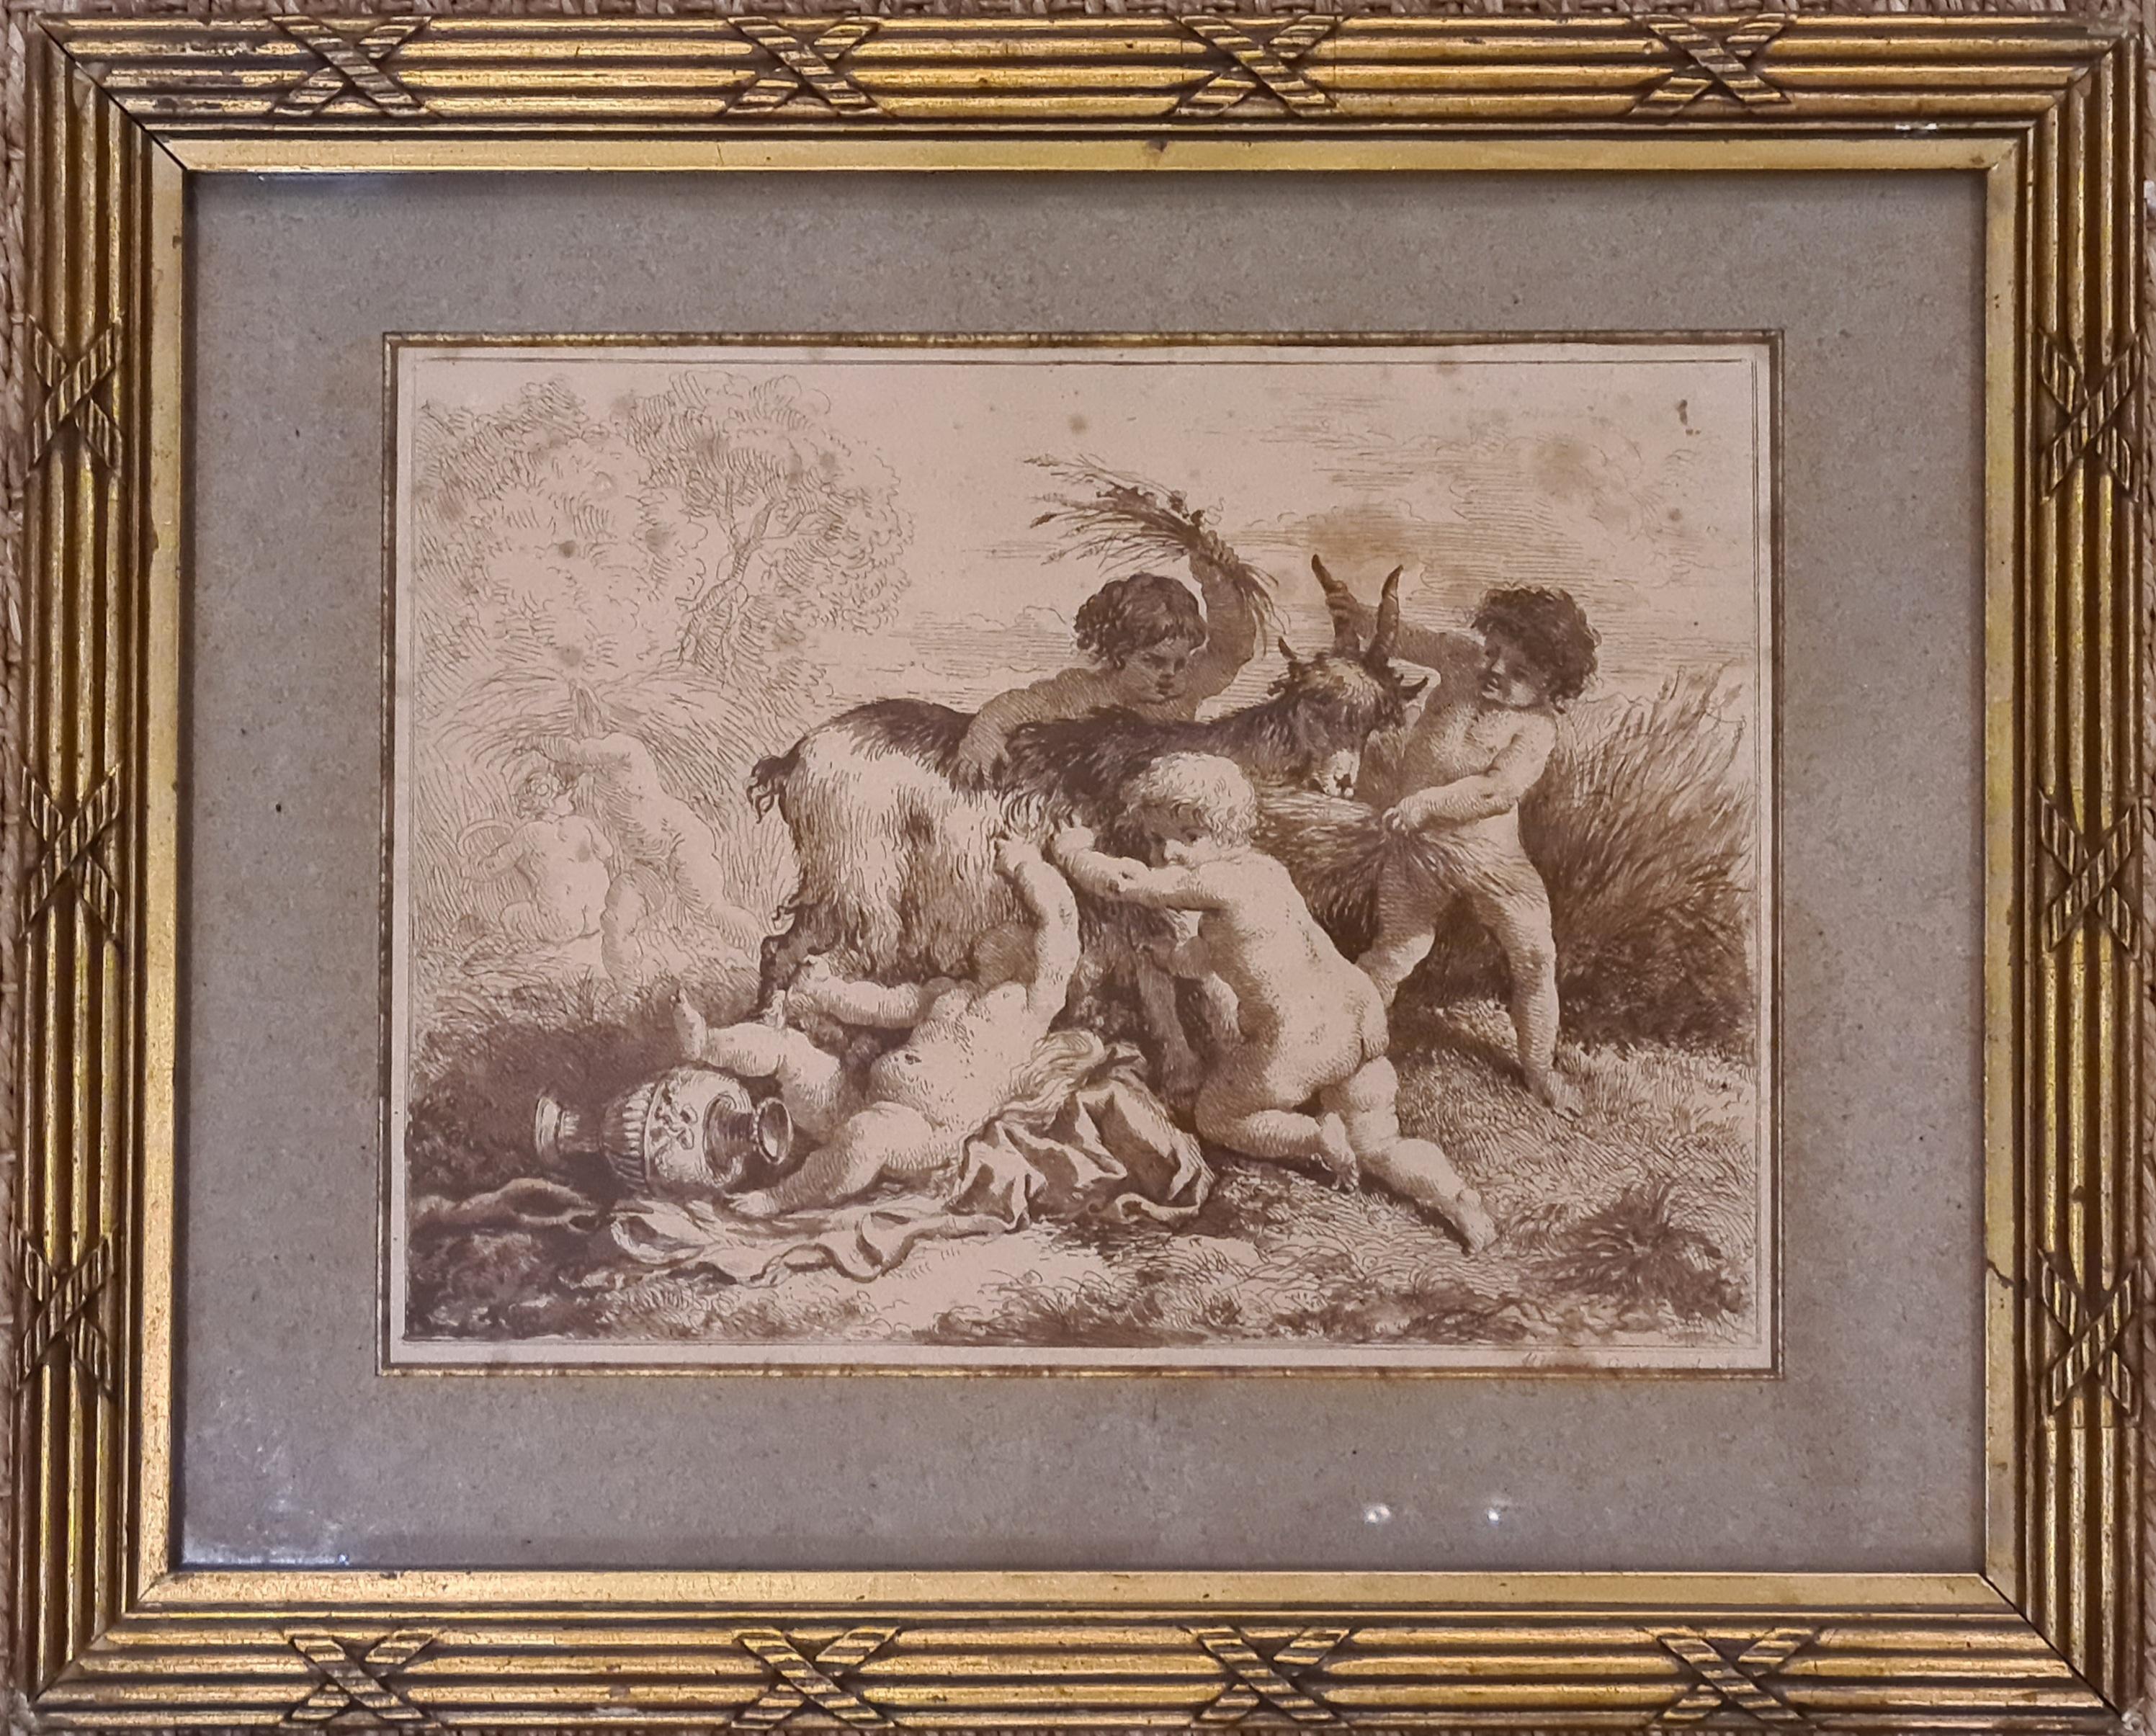 Nude Print Jean-Jacques Lagrenée The Younger - La moisson, chérubins se promenant avec une chèvre, gravure encadrée du 18ème siècle